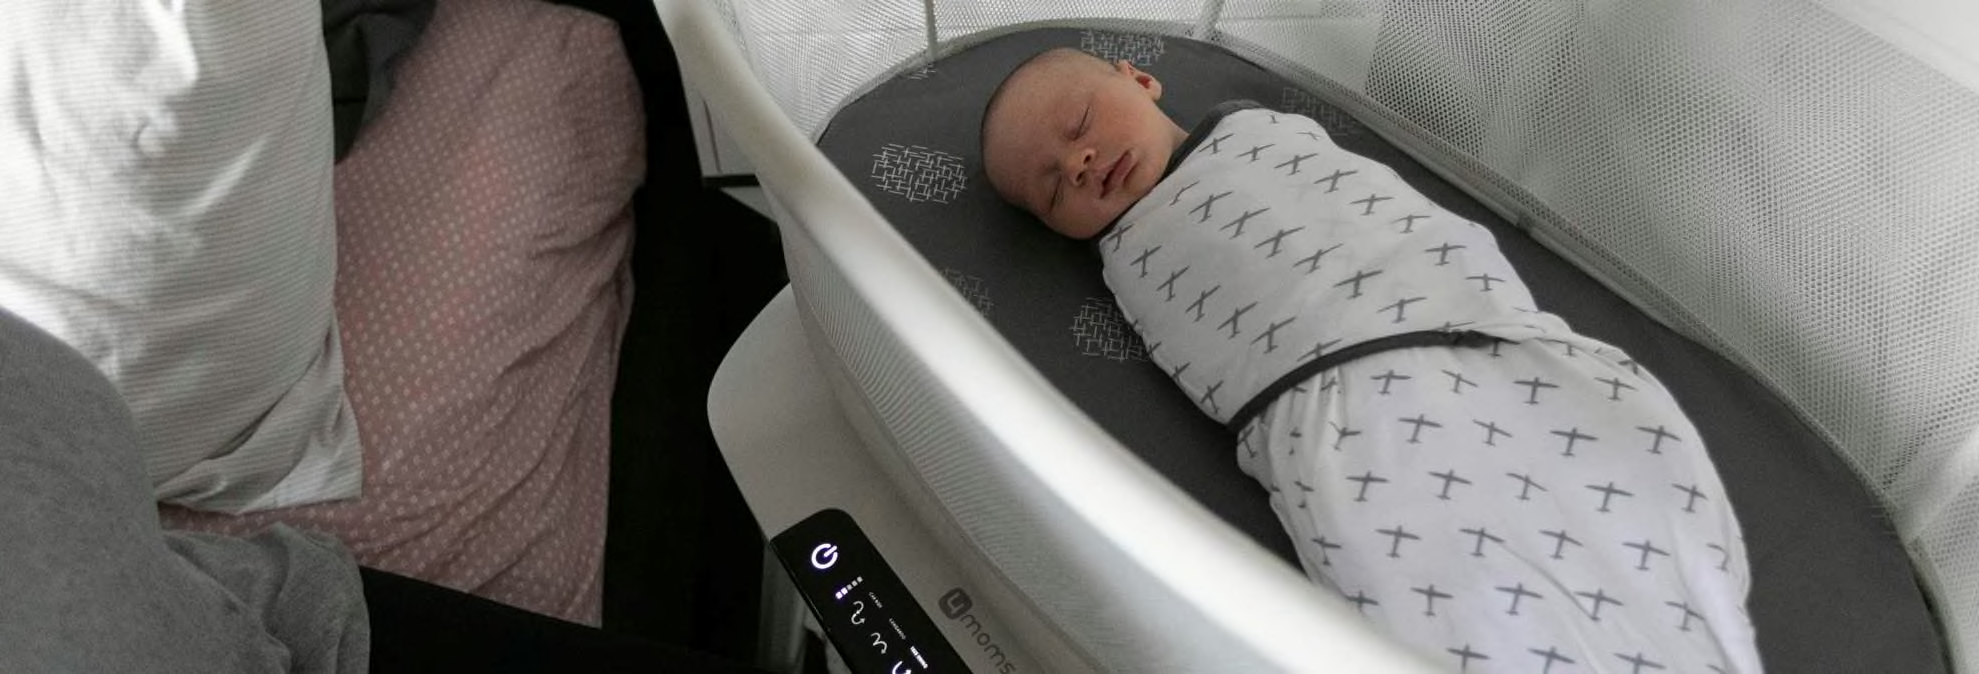 baby in 4moms mamaRoo sleep bassinet